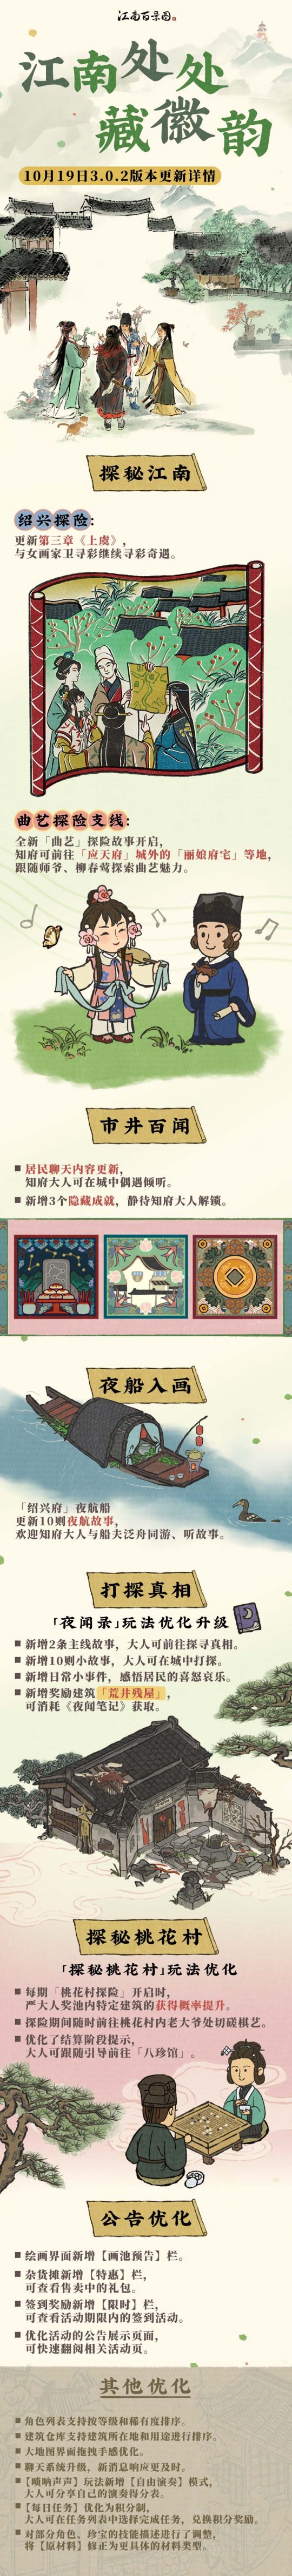 江南处处藏徽韵《江南百景图》3.0.2版本上线